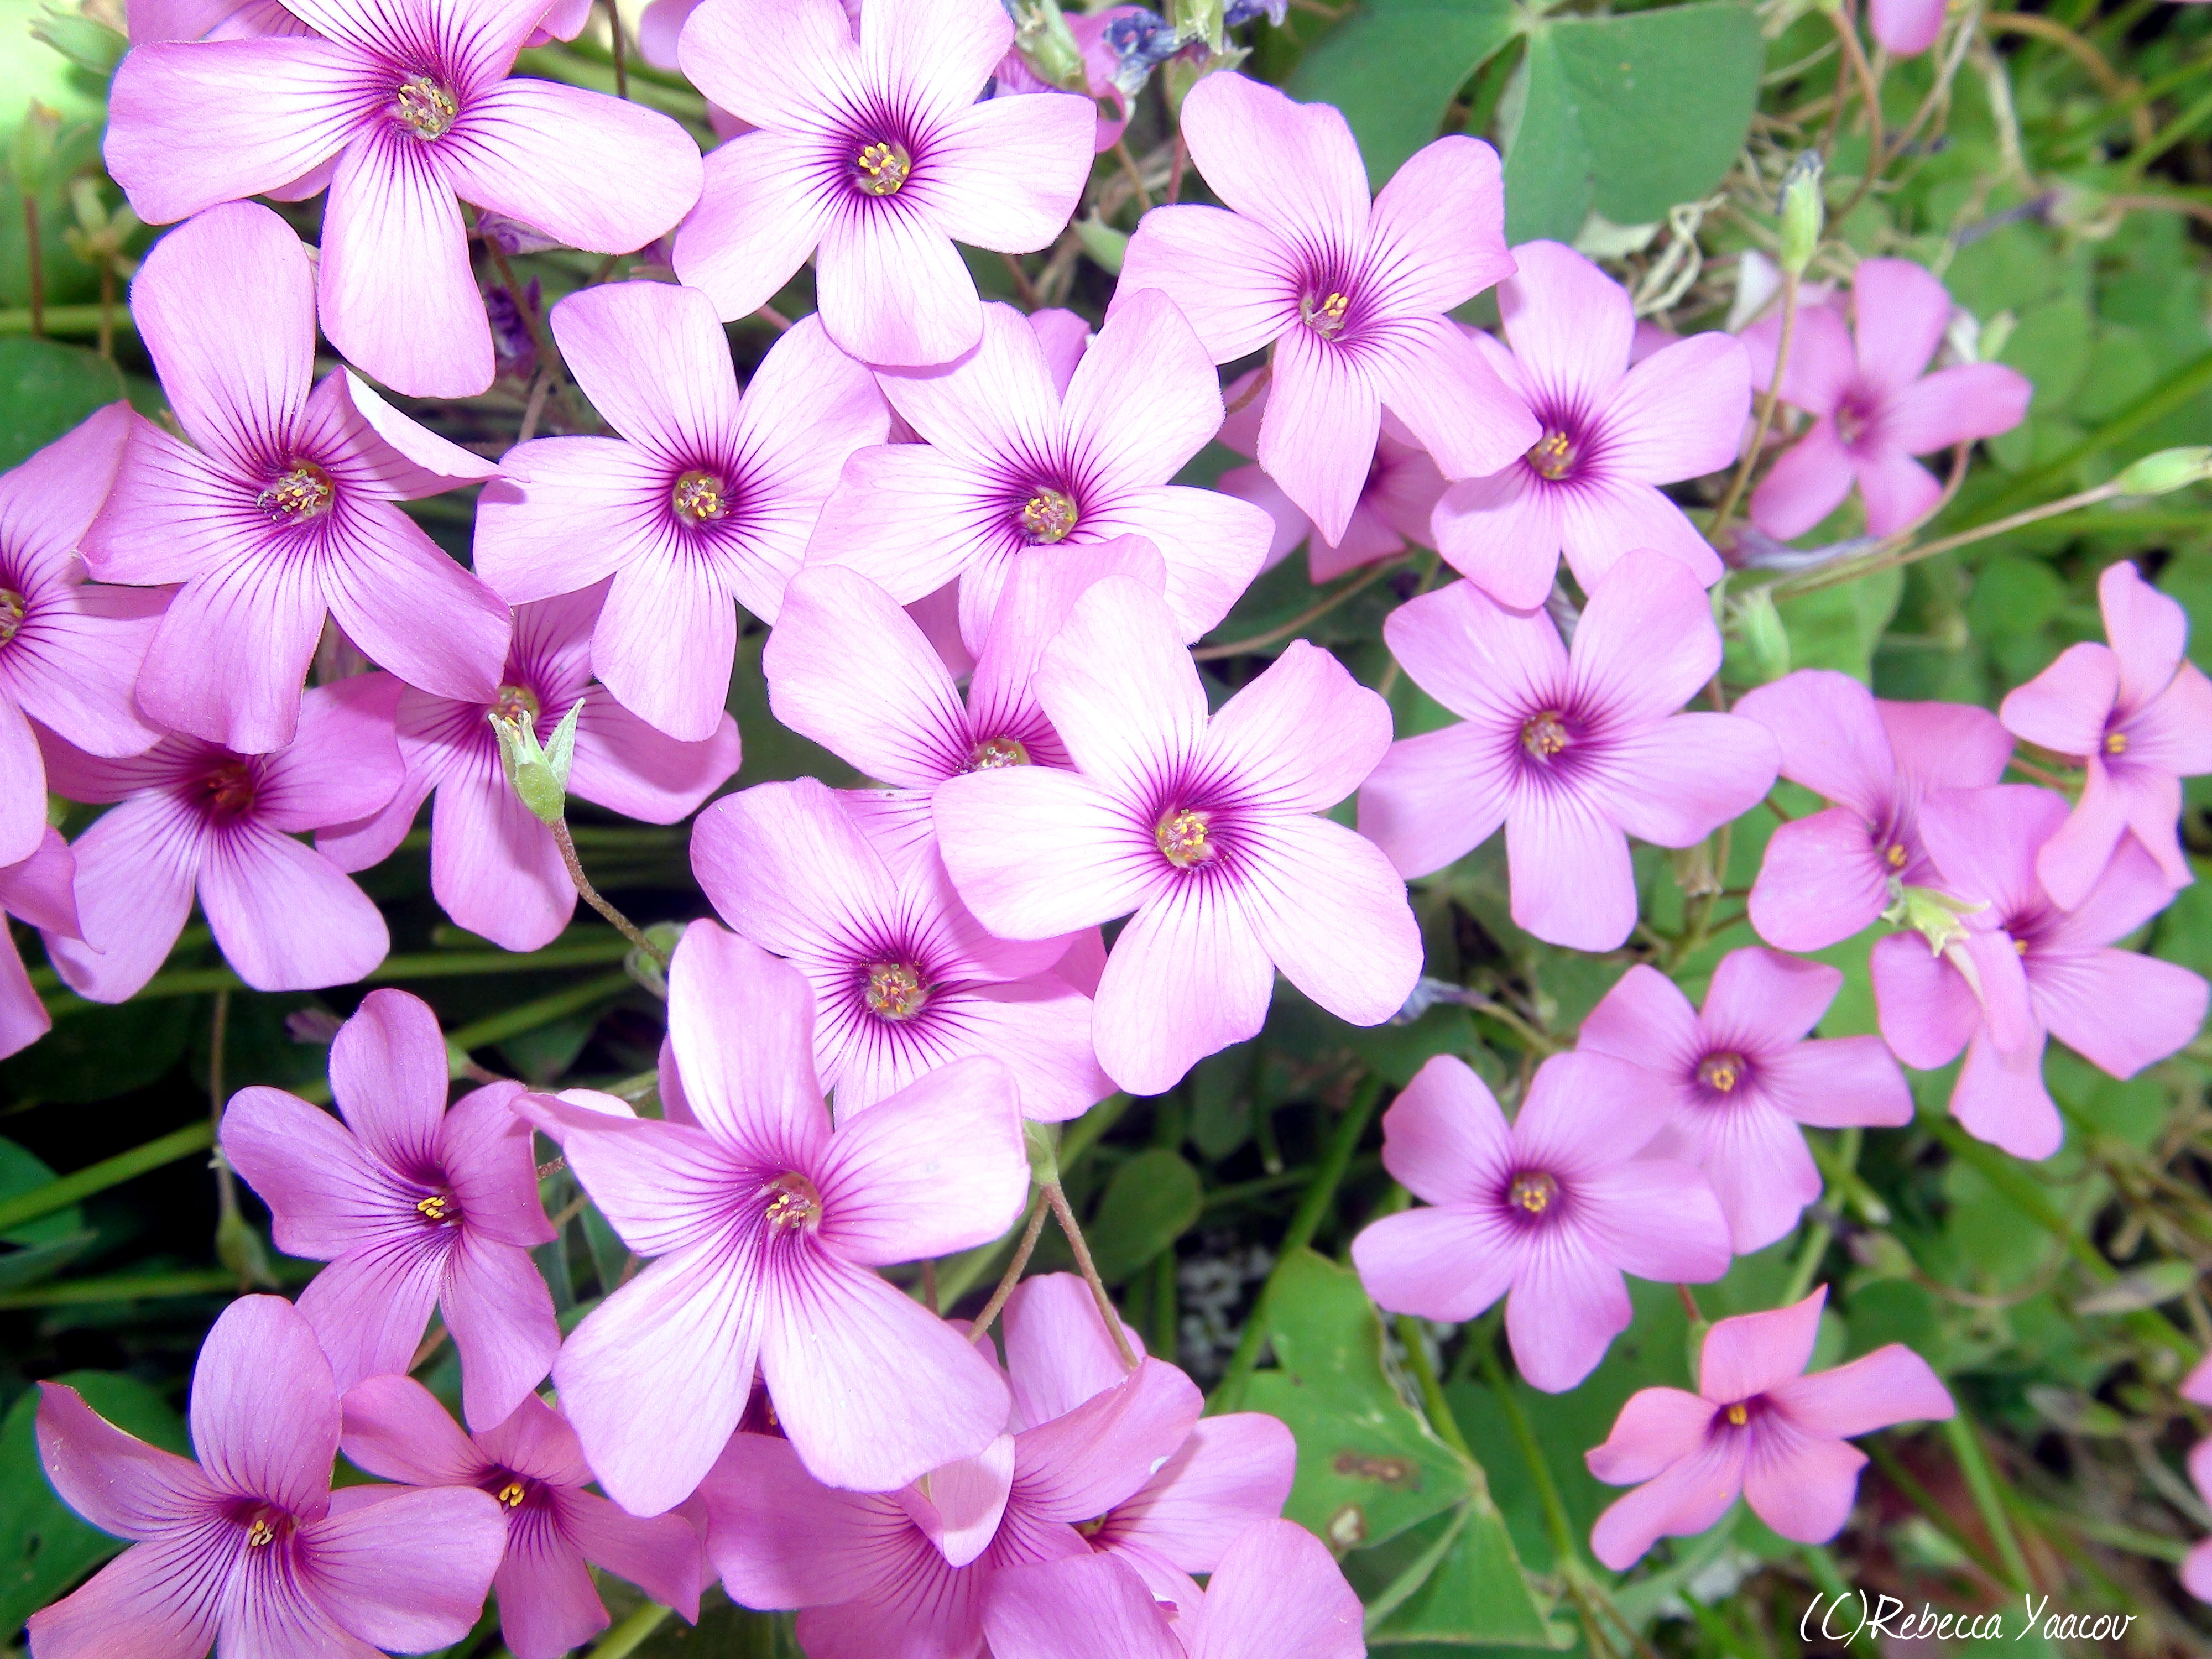 Light Purple Flowers Tumblr